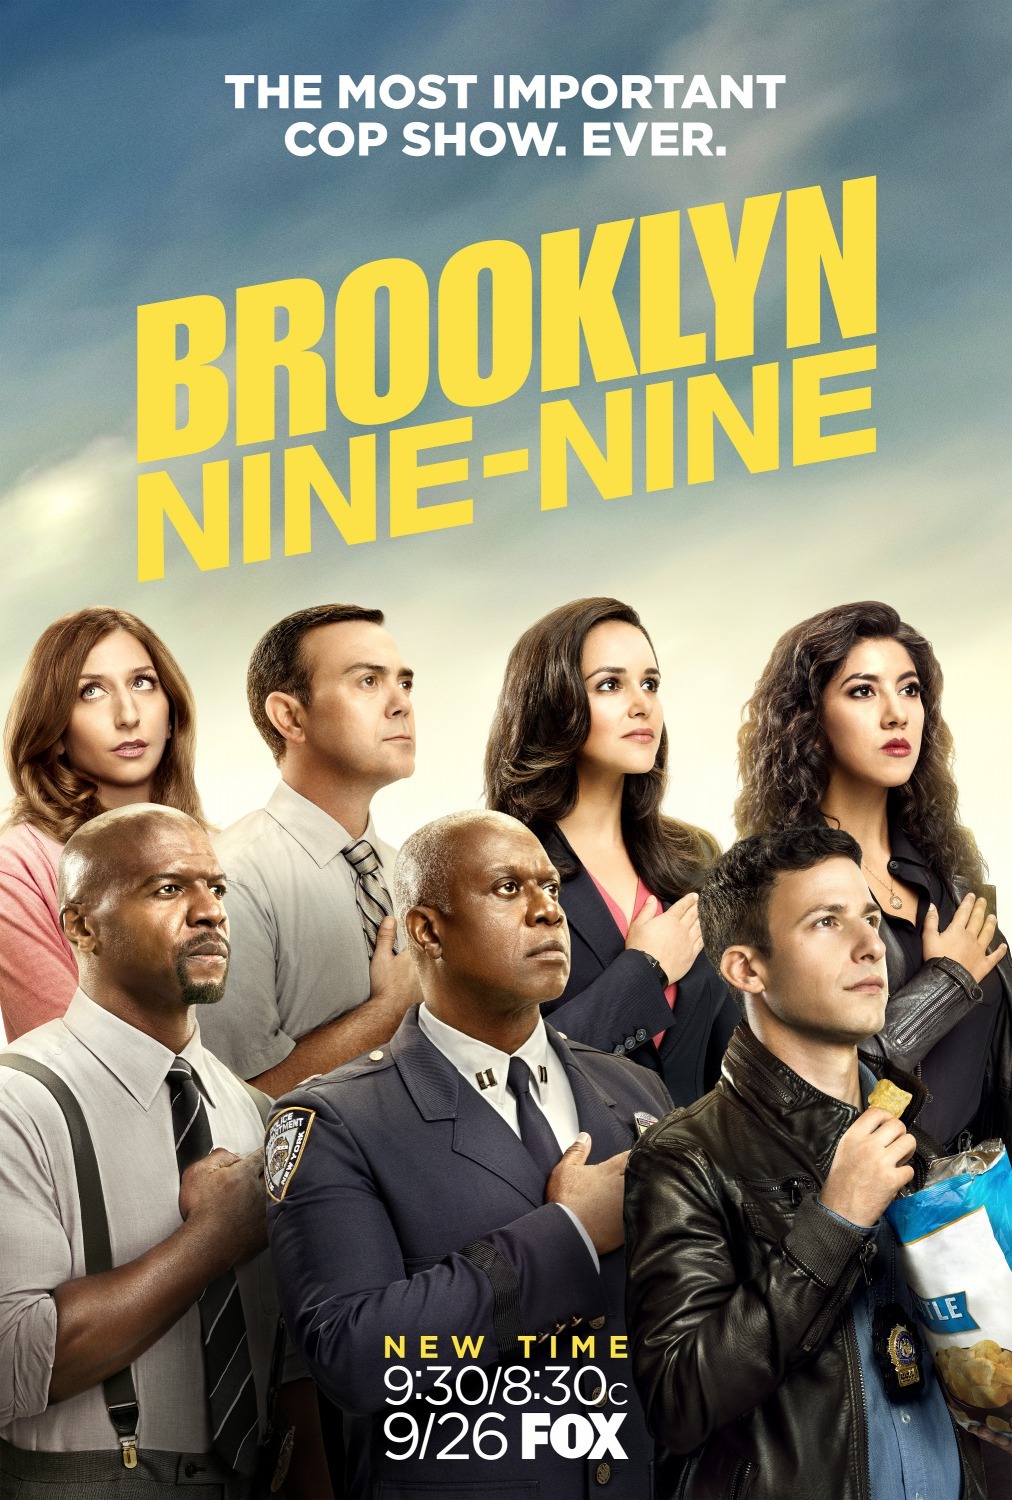 ดูหนังออนไลน์ฟรี Brooklyn Nine-Nine Season 4 EP.20 บรู๊คลินเก้า ปี 4 ตอนที่ 20